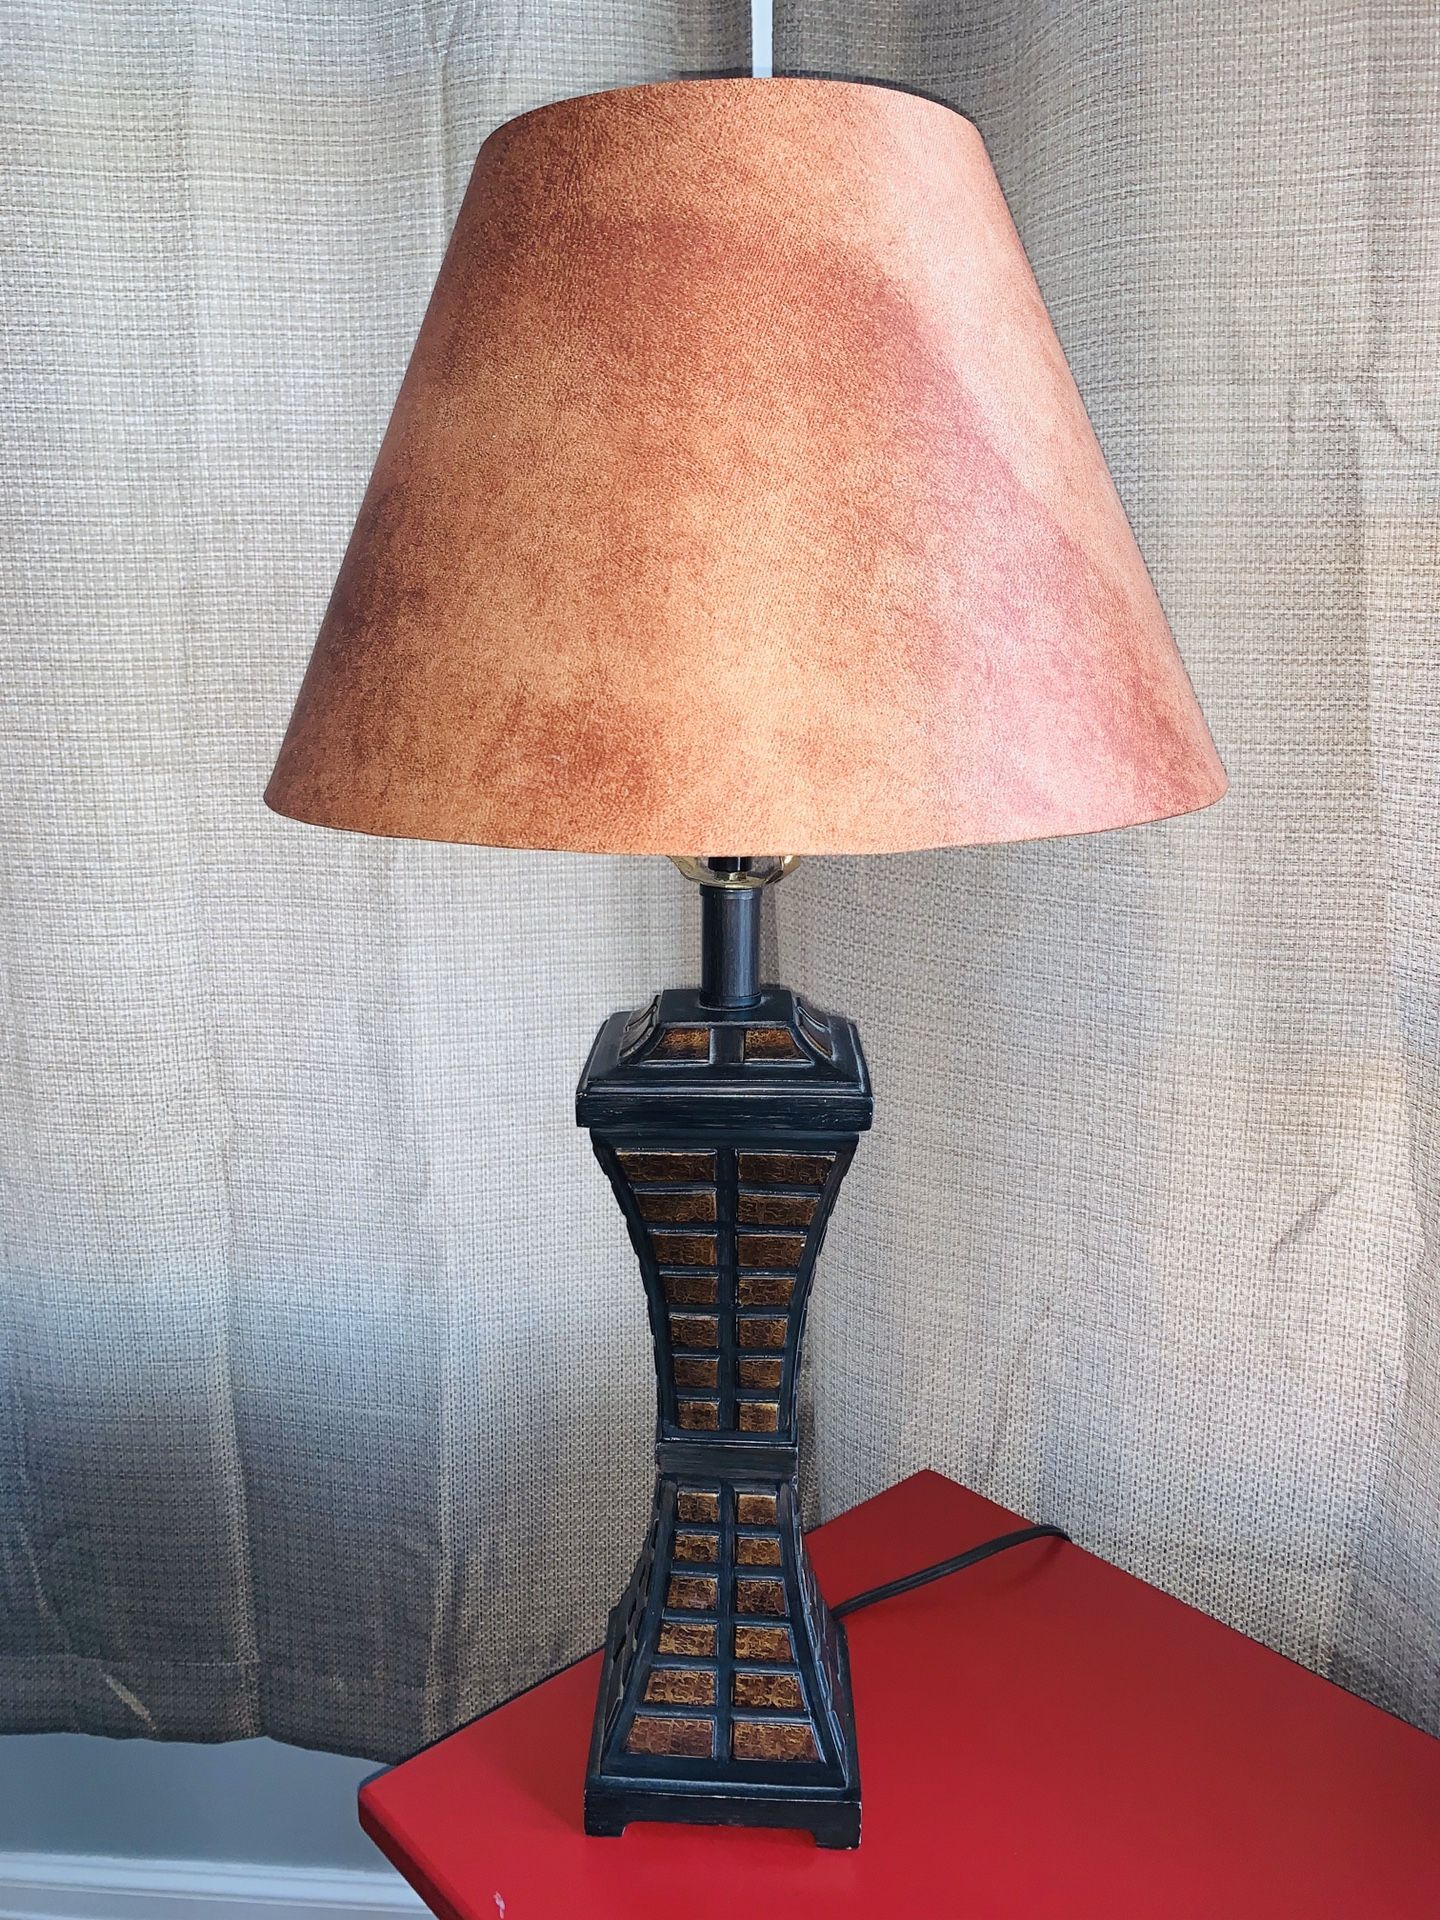 Lamp and Lamp Shade